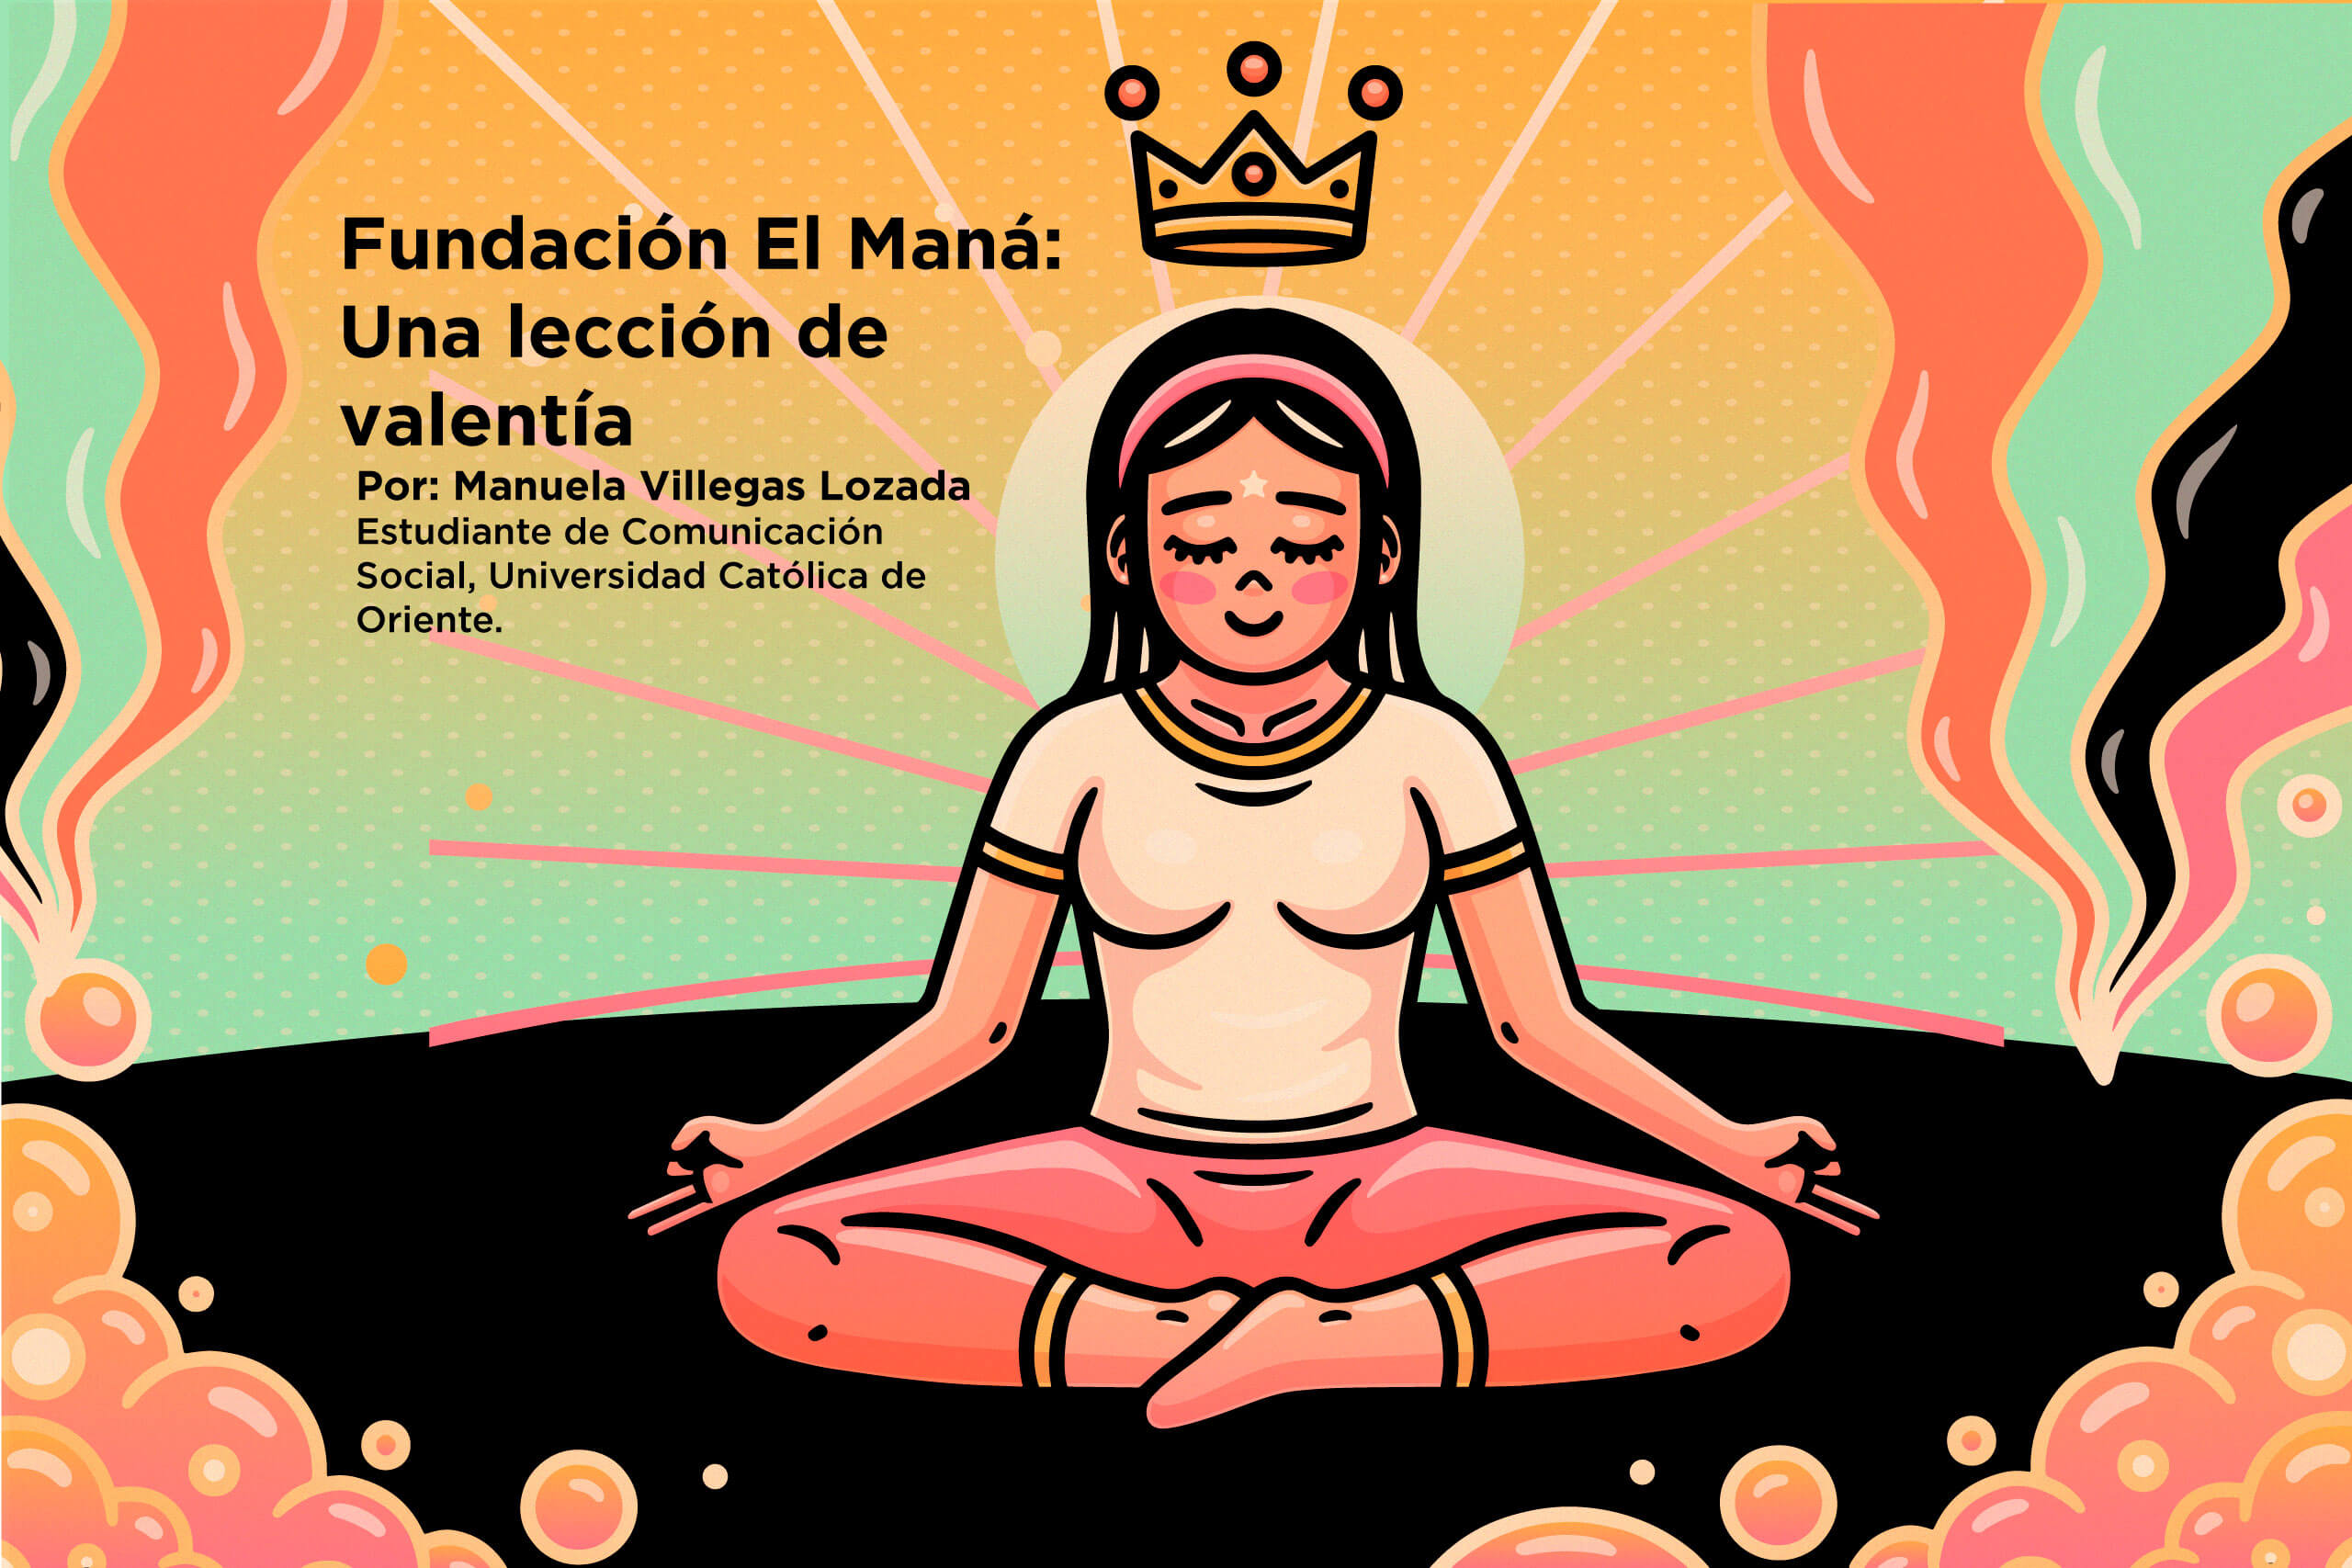 <strong>Fundación El Maná: Una lección de valentía</strong>